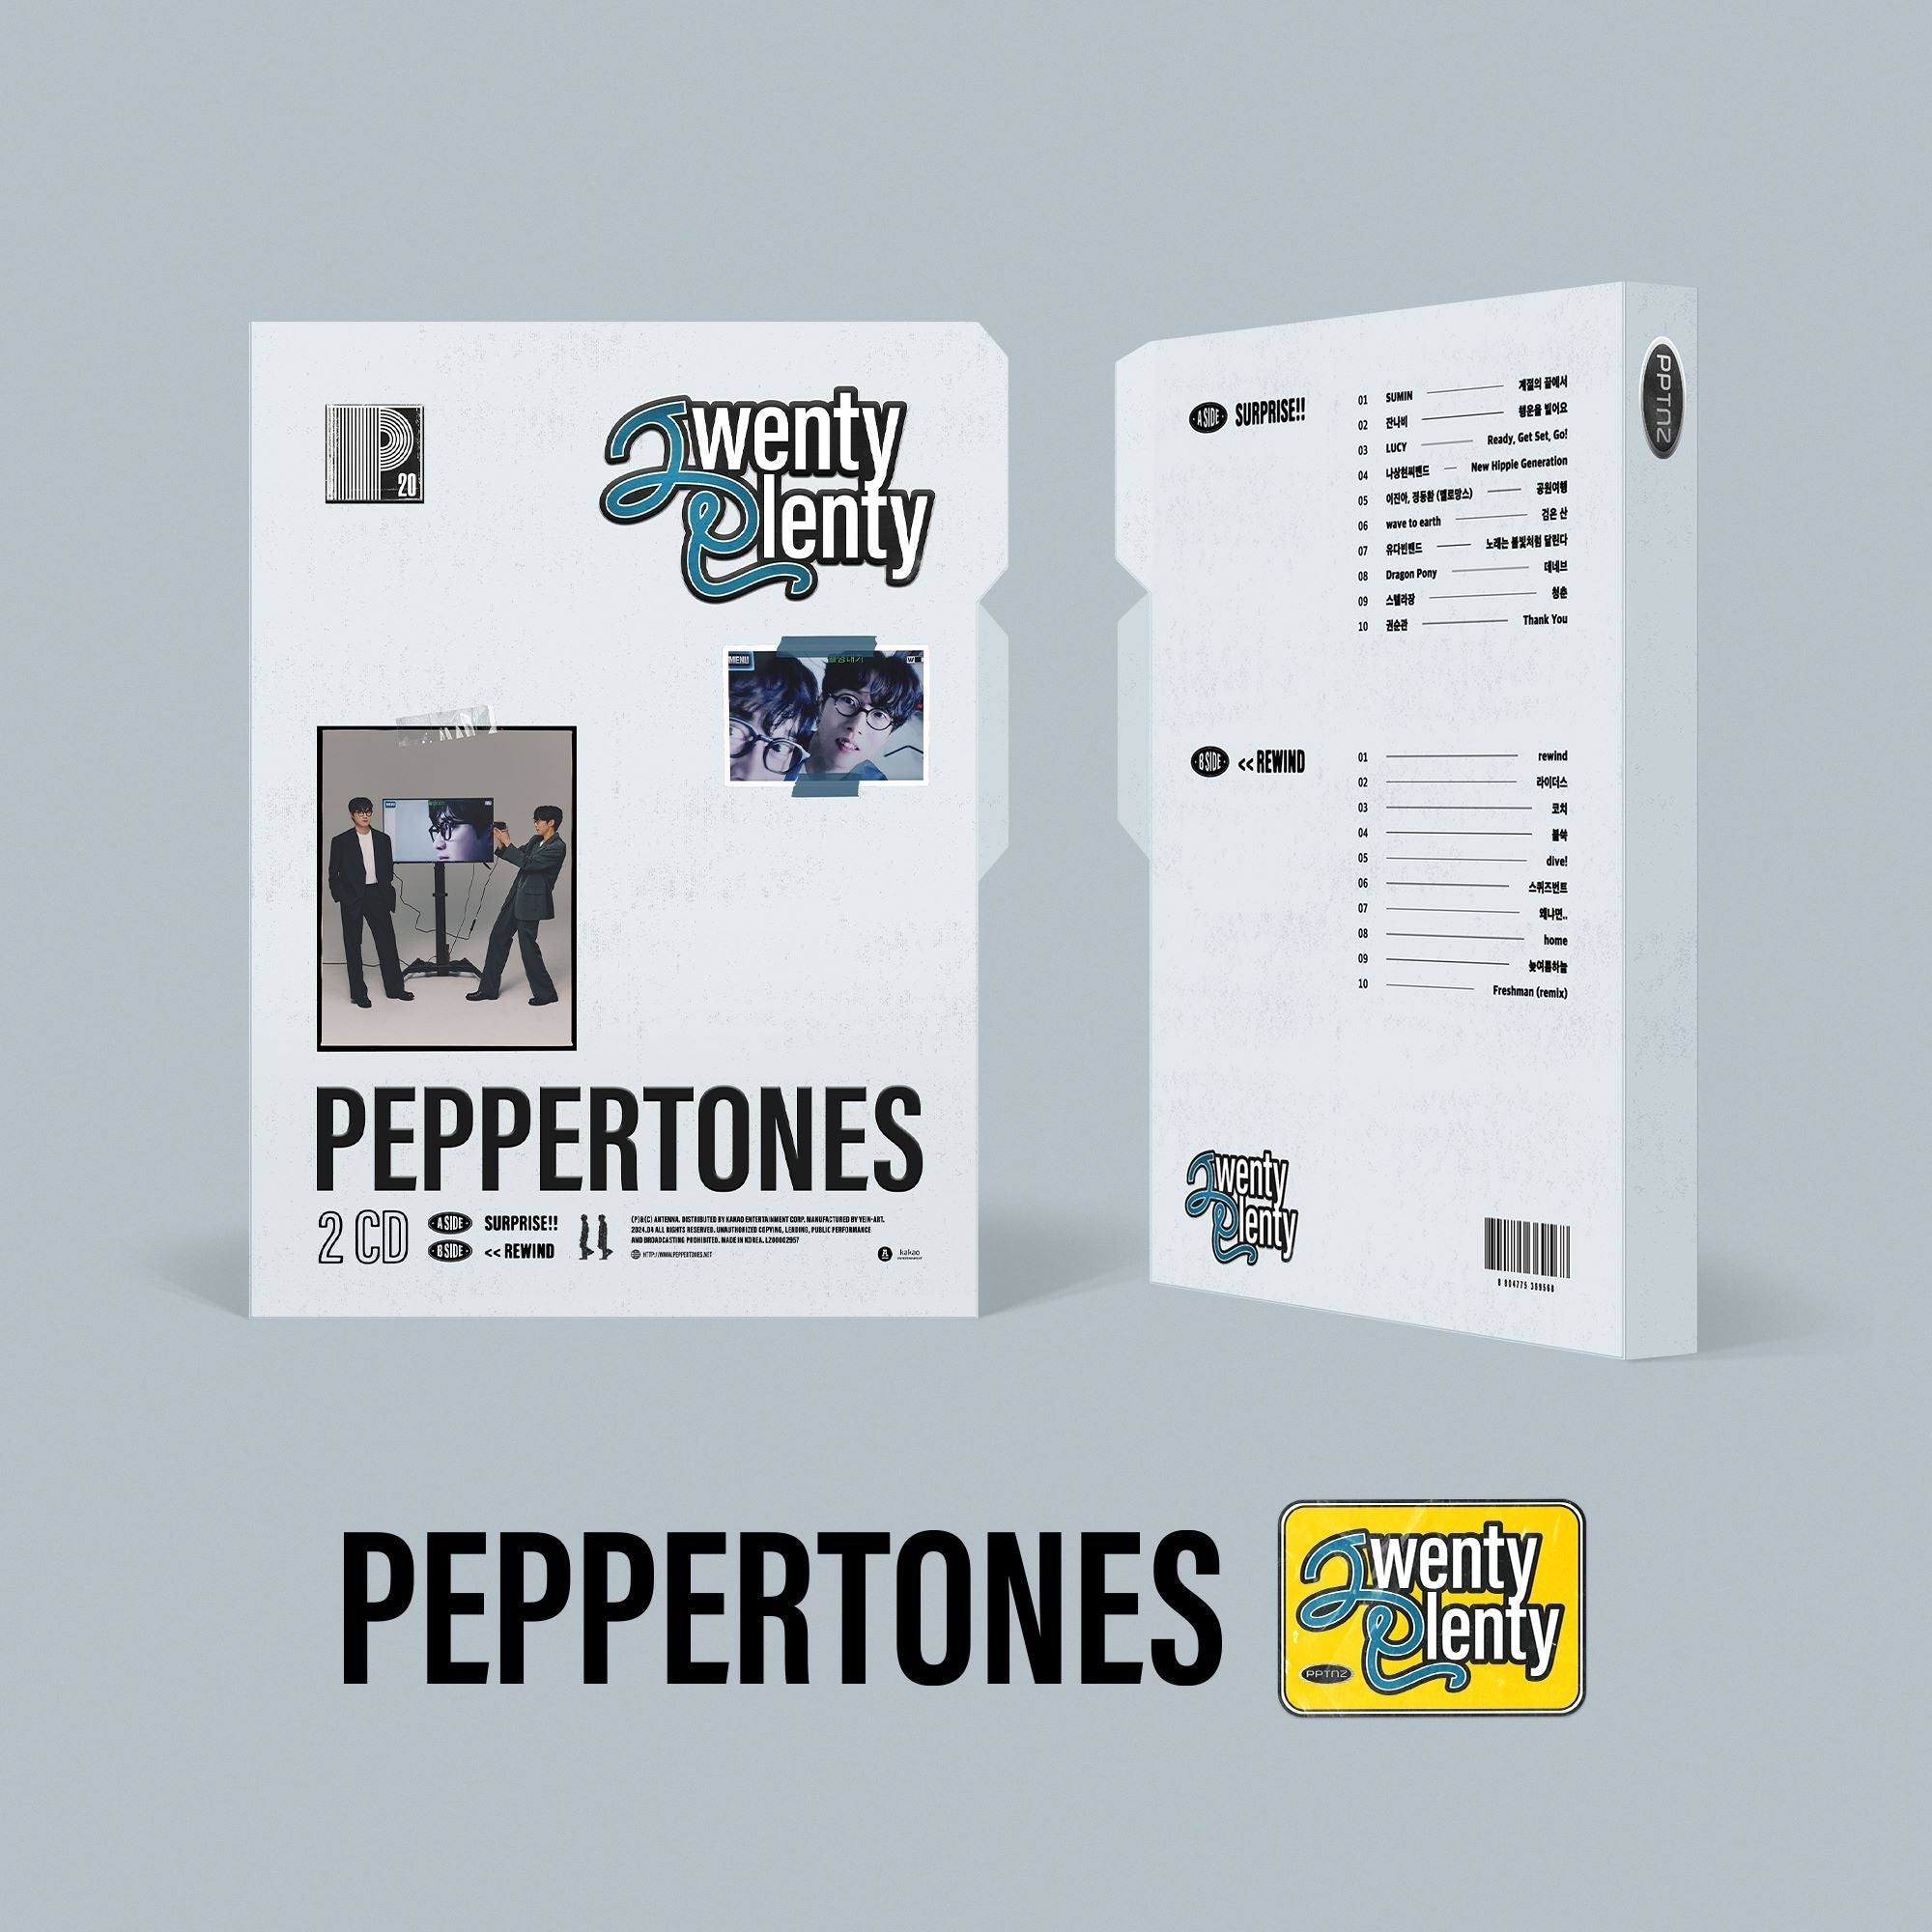 Peppertones - 20TH ANNIVERSARY ALBUM [Twenty Plenty] - KPOPHERO